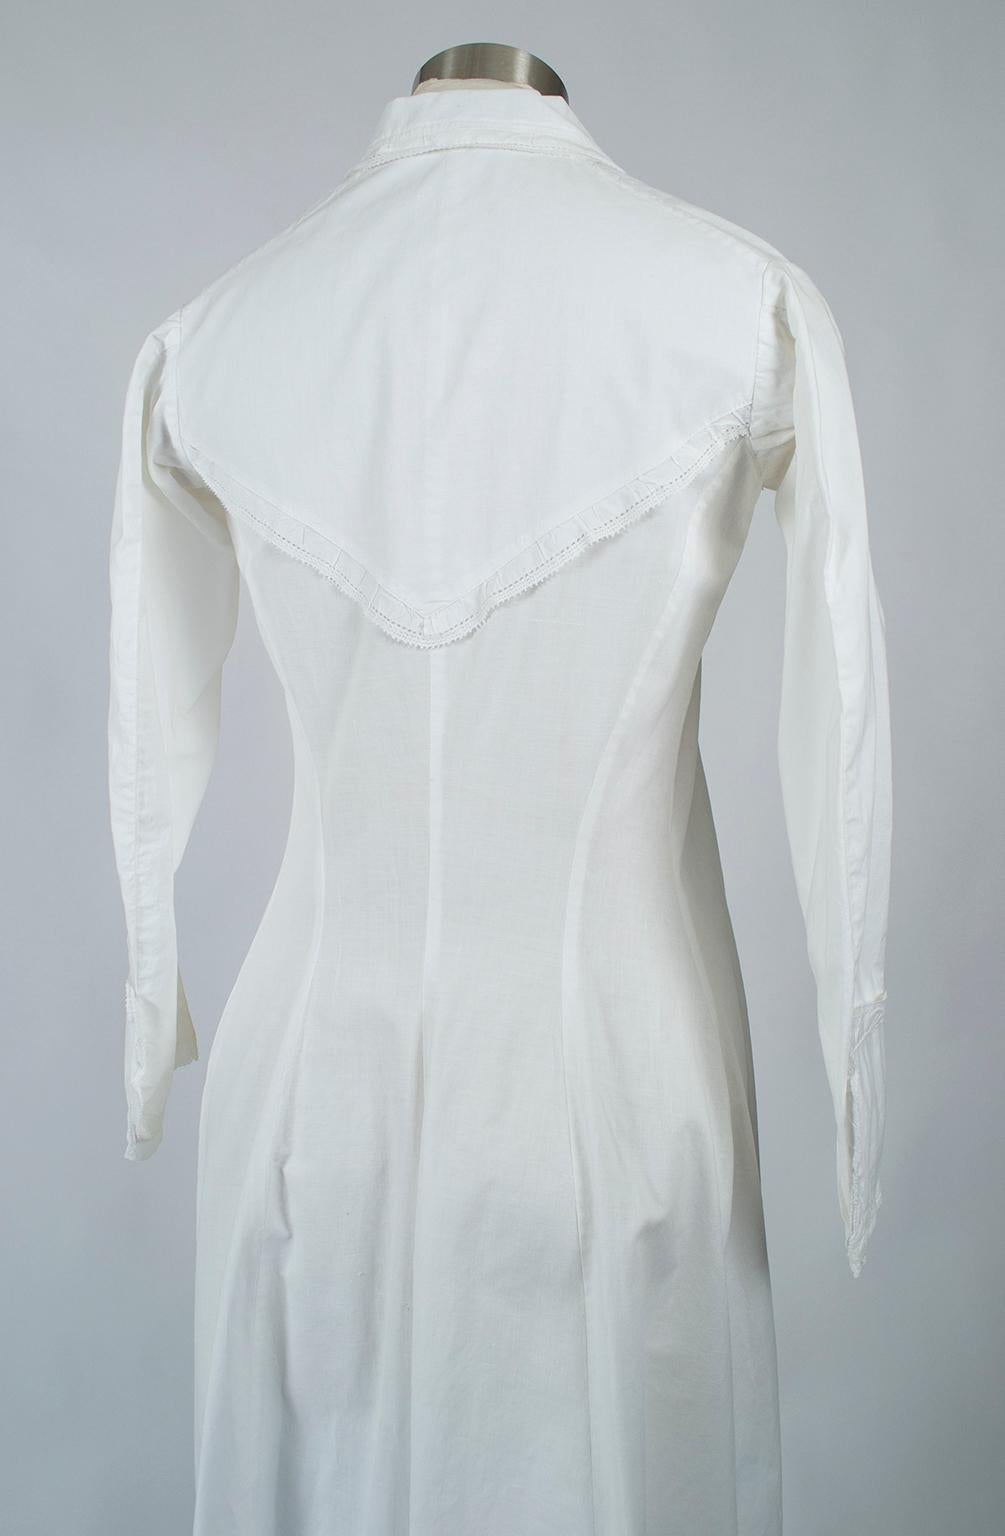 Original Civil War White Western Prairie Homesteader Shirtwaist Dress -XS, 1860s In Good Condition For Sale In Tucson, AZ